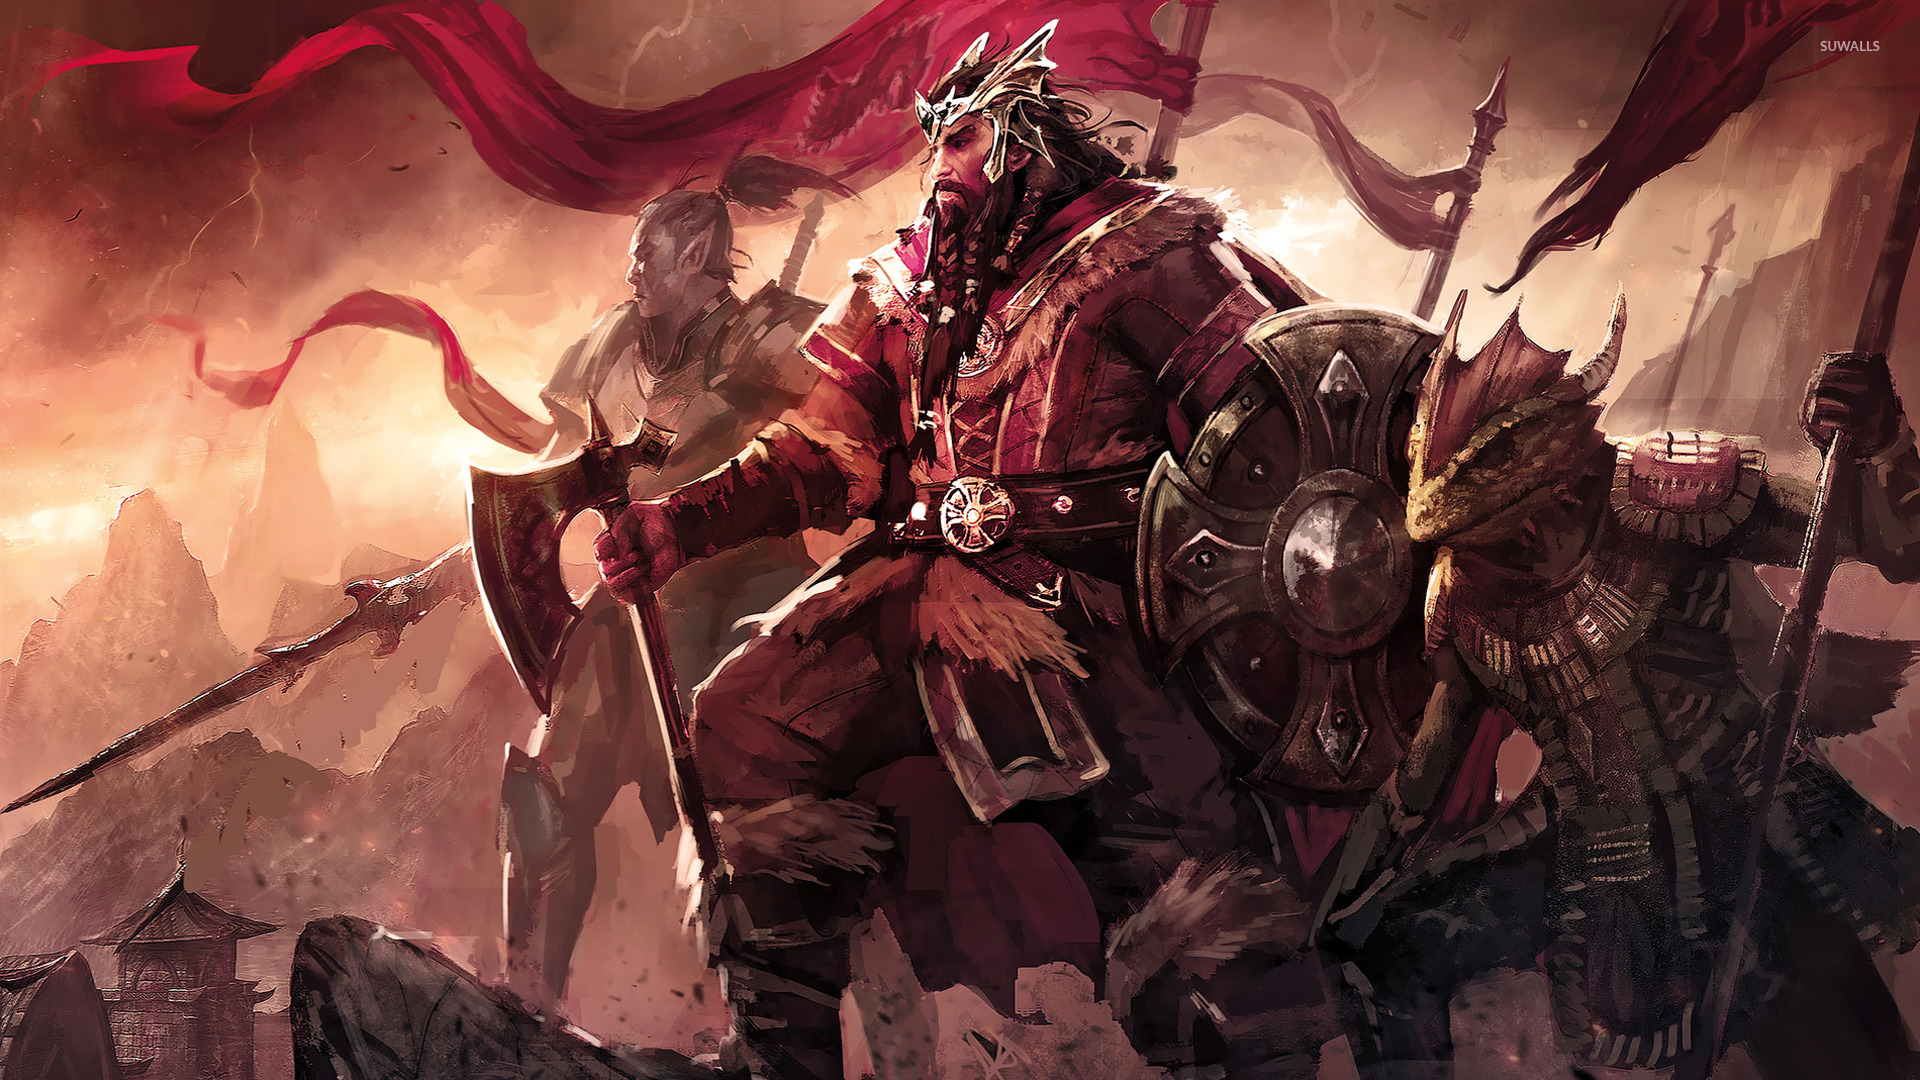 Battle Fantasy Jorunn The Skald King Red The Elder Scrolls Warrior 1920x1080